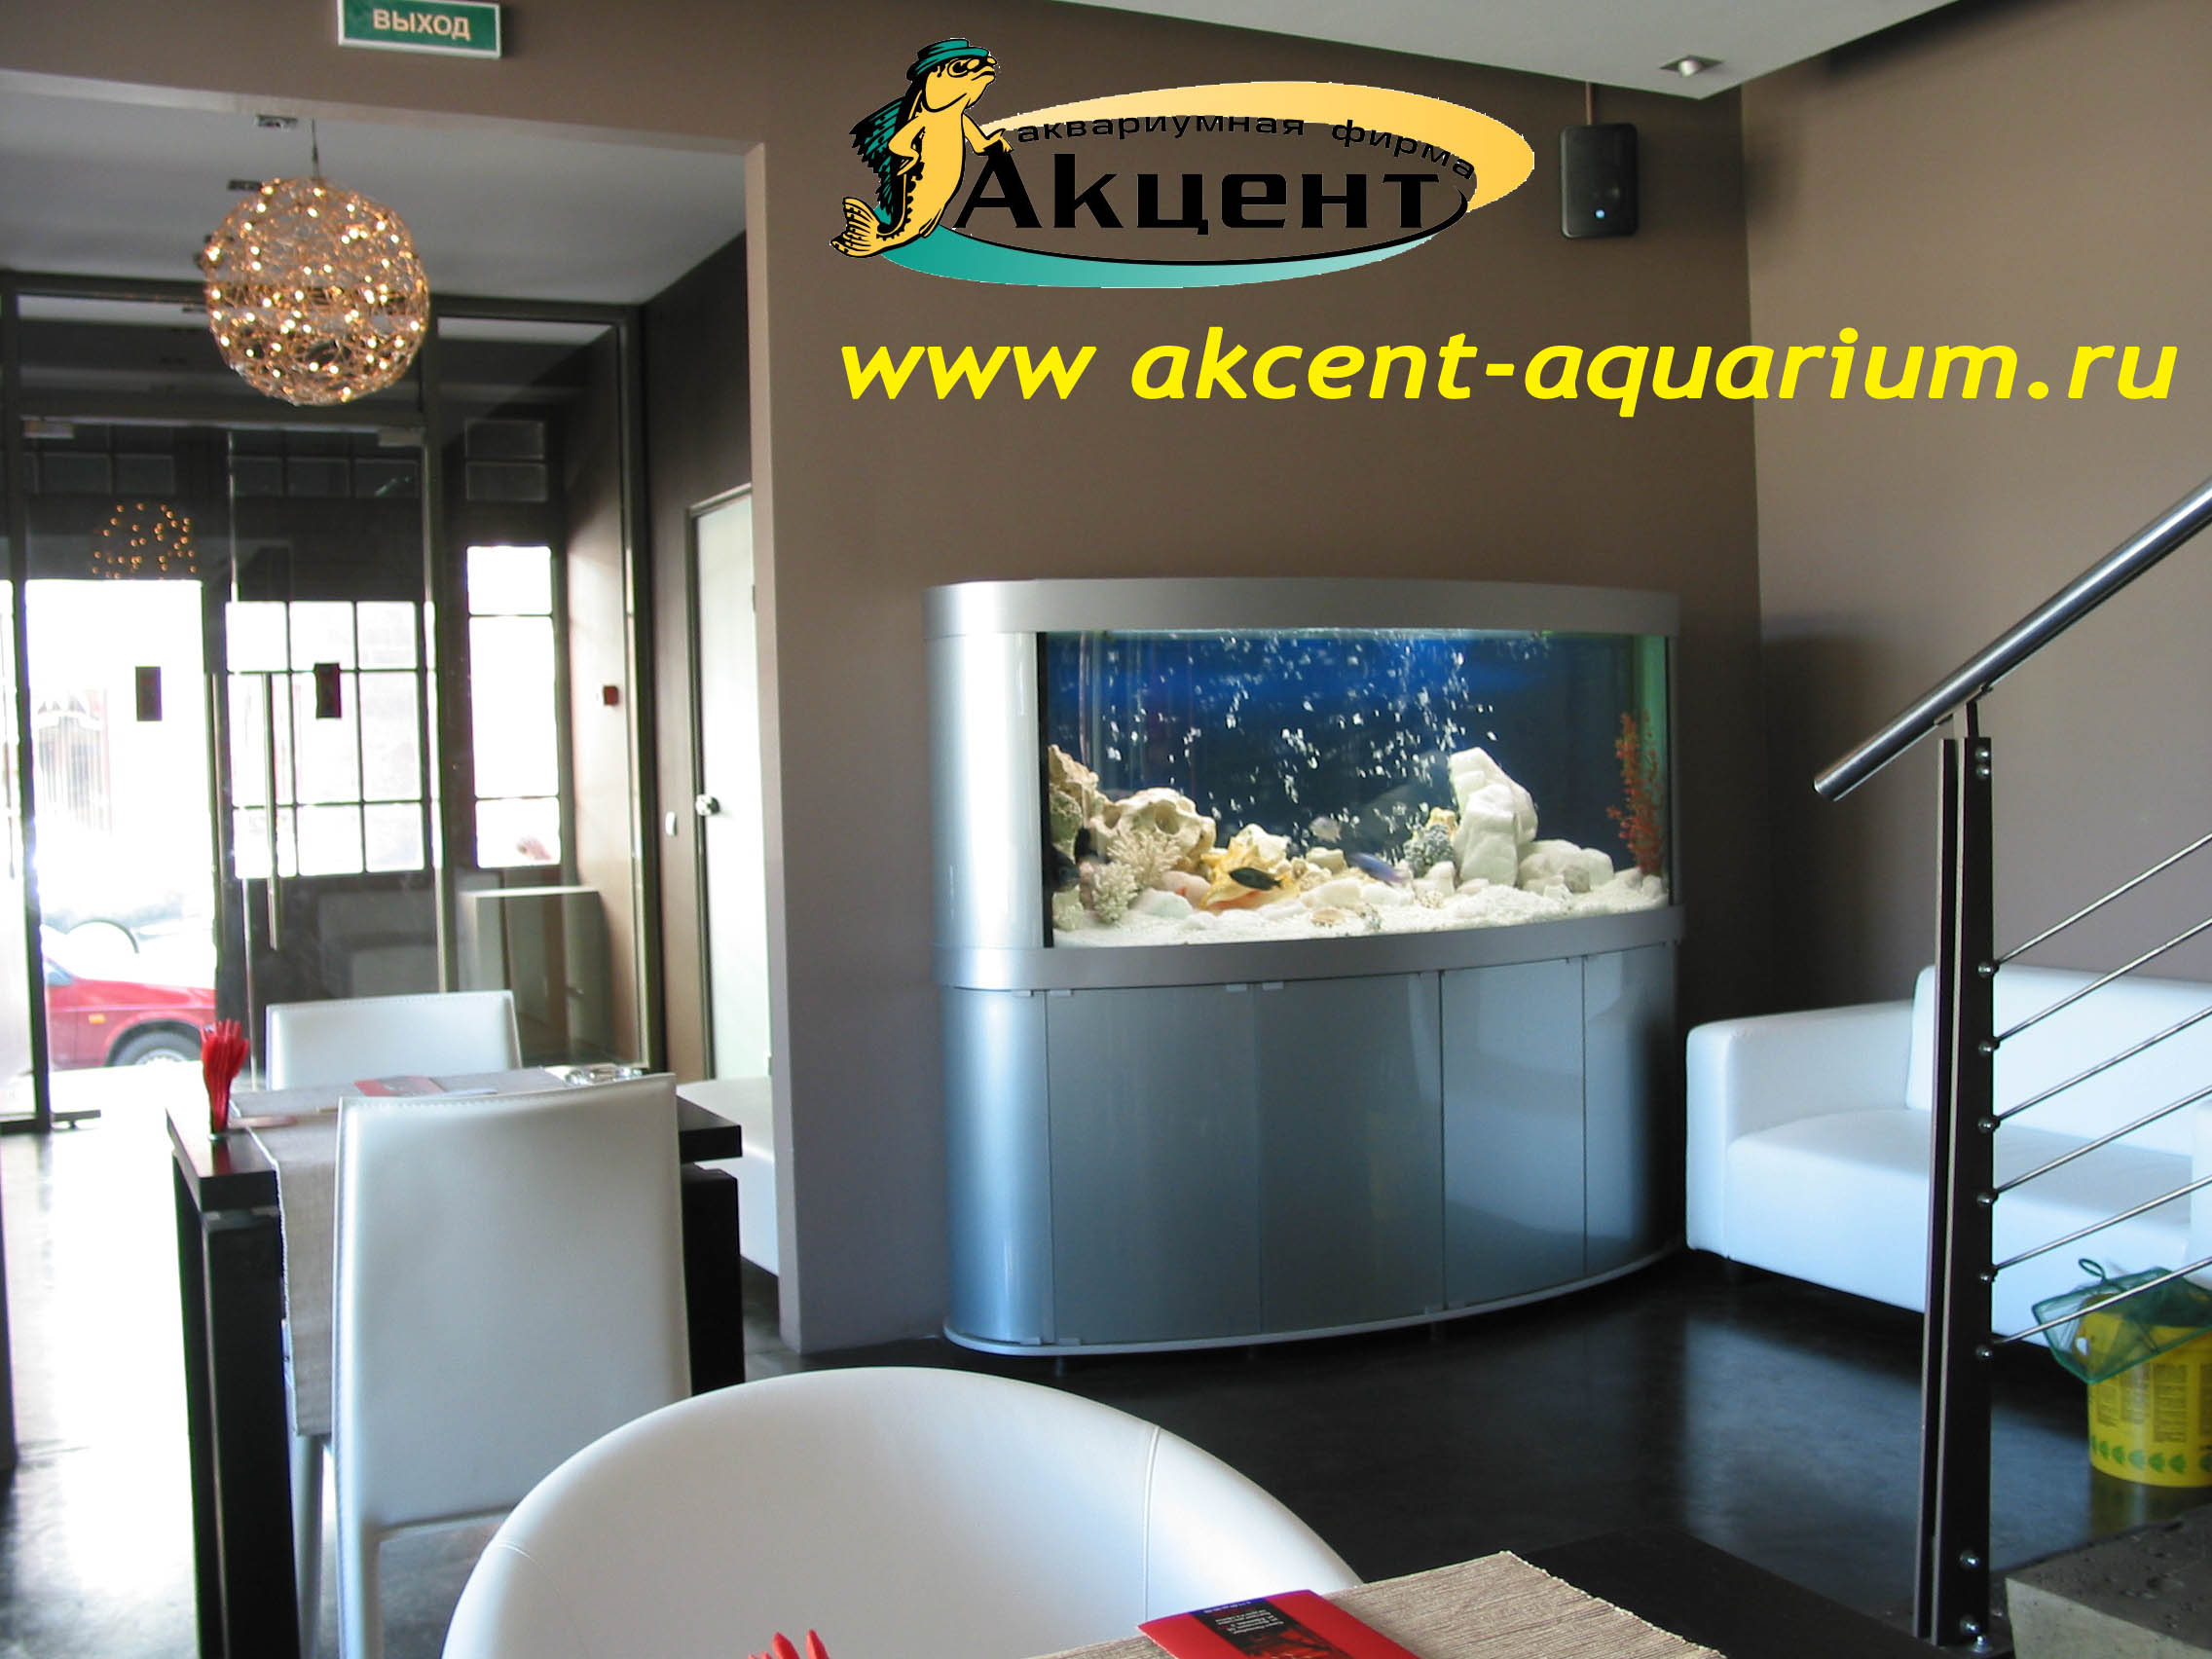 Акцент-Аквариум, аквариум эллипсоидной формы 500 литров кафе